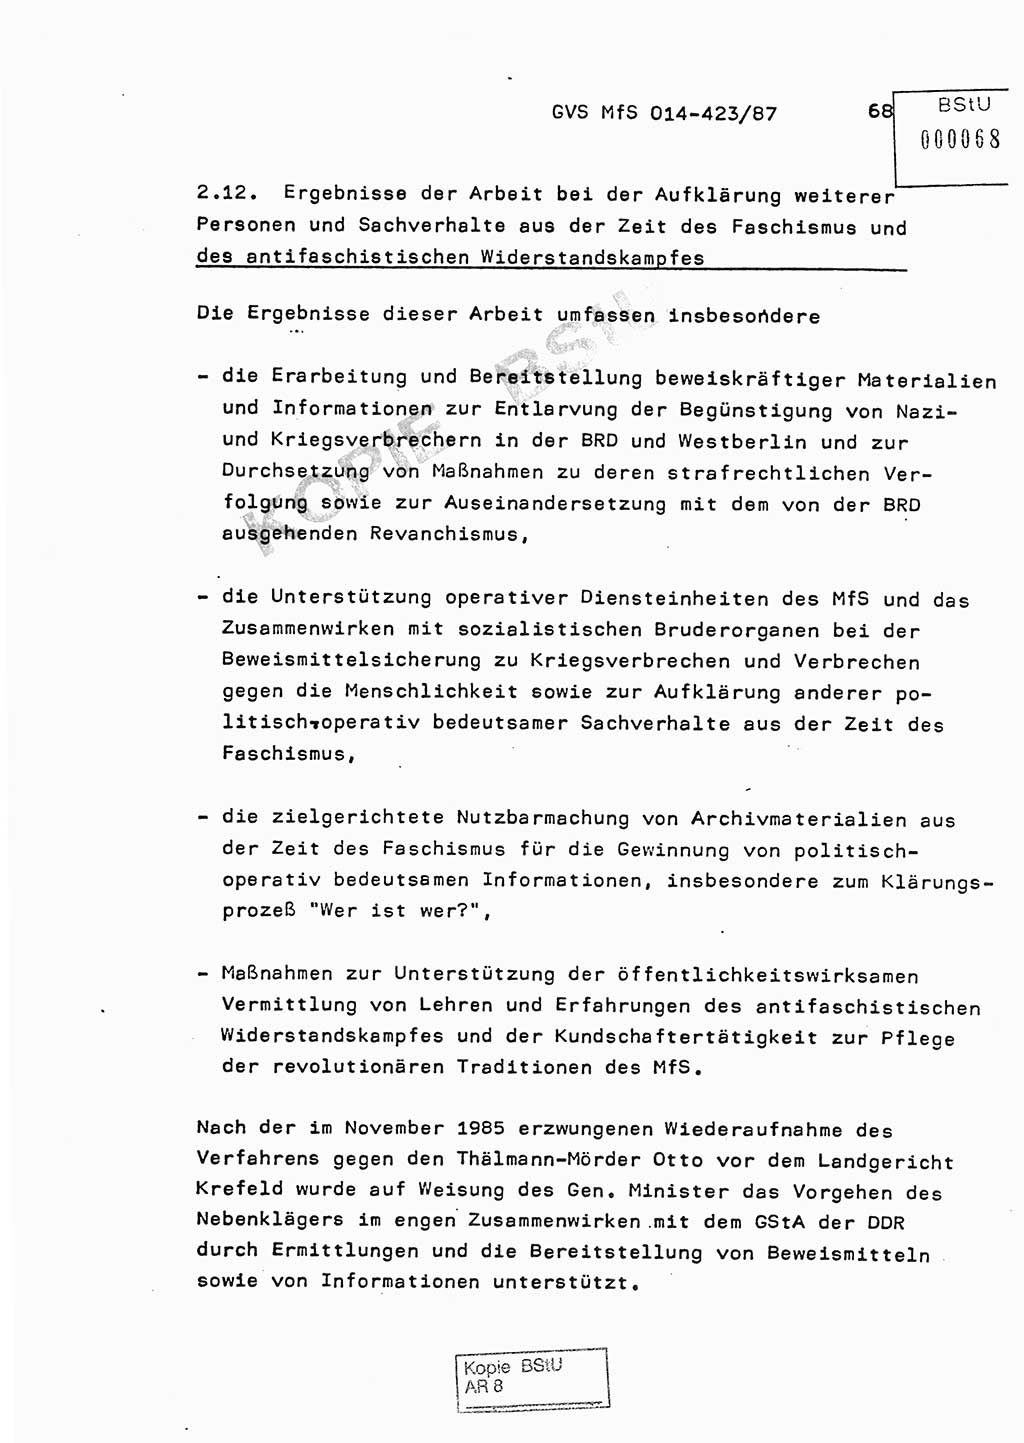 Jahresbericht der Hauptabteilung (HA) Ⅸ 1986, Einschätzung der Wirksamkeit der Untersuchungsarbeit im Jahre 1986, Ministerium für Staatssicherheit (MfS) der Deutschen Demokratischen Republik (DDR), Hauptabteilung Ⅸ, Geheime Verschlußsache (GVS) o014-423/87, Berlin 1987, Seite 68 (Einsch. MfS DDR HA Ⅸ GVS o014-423/87 1986, S. 68)